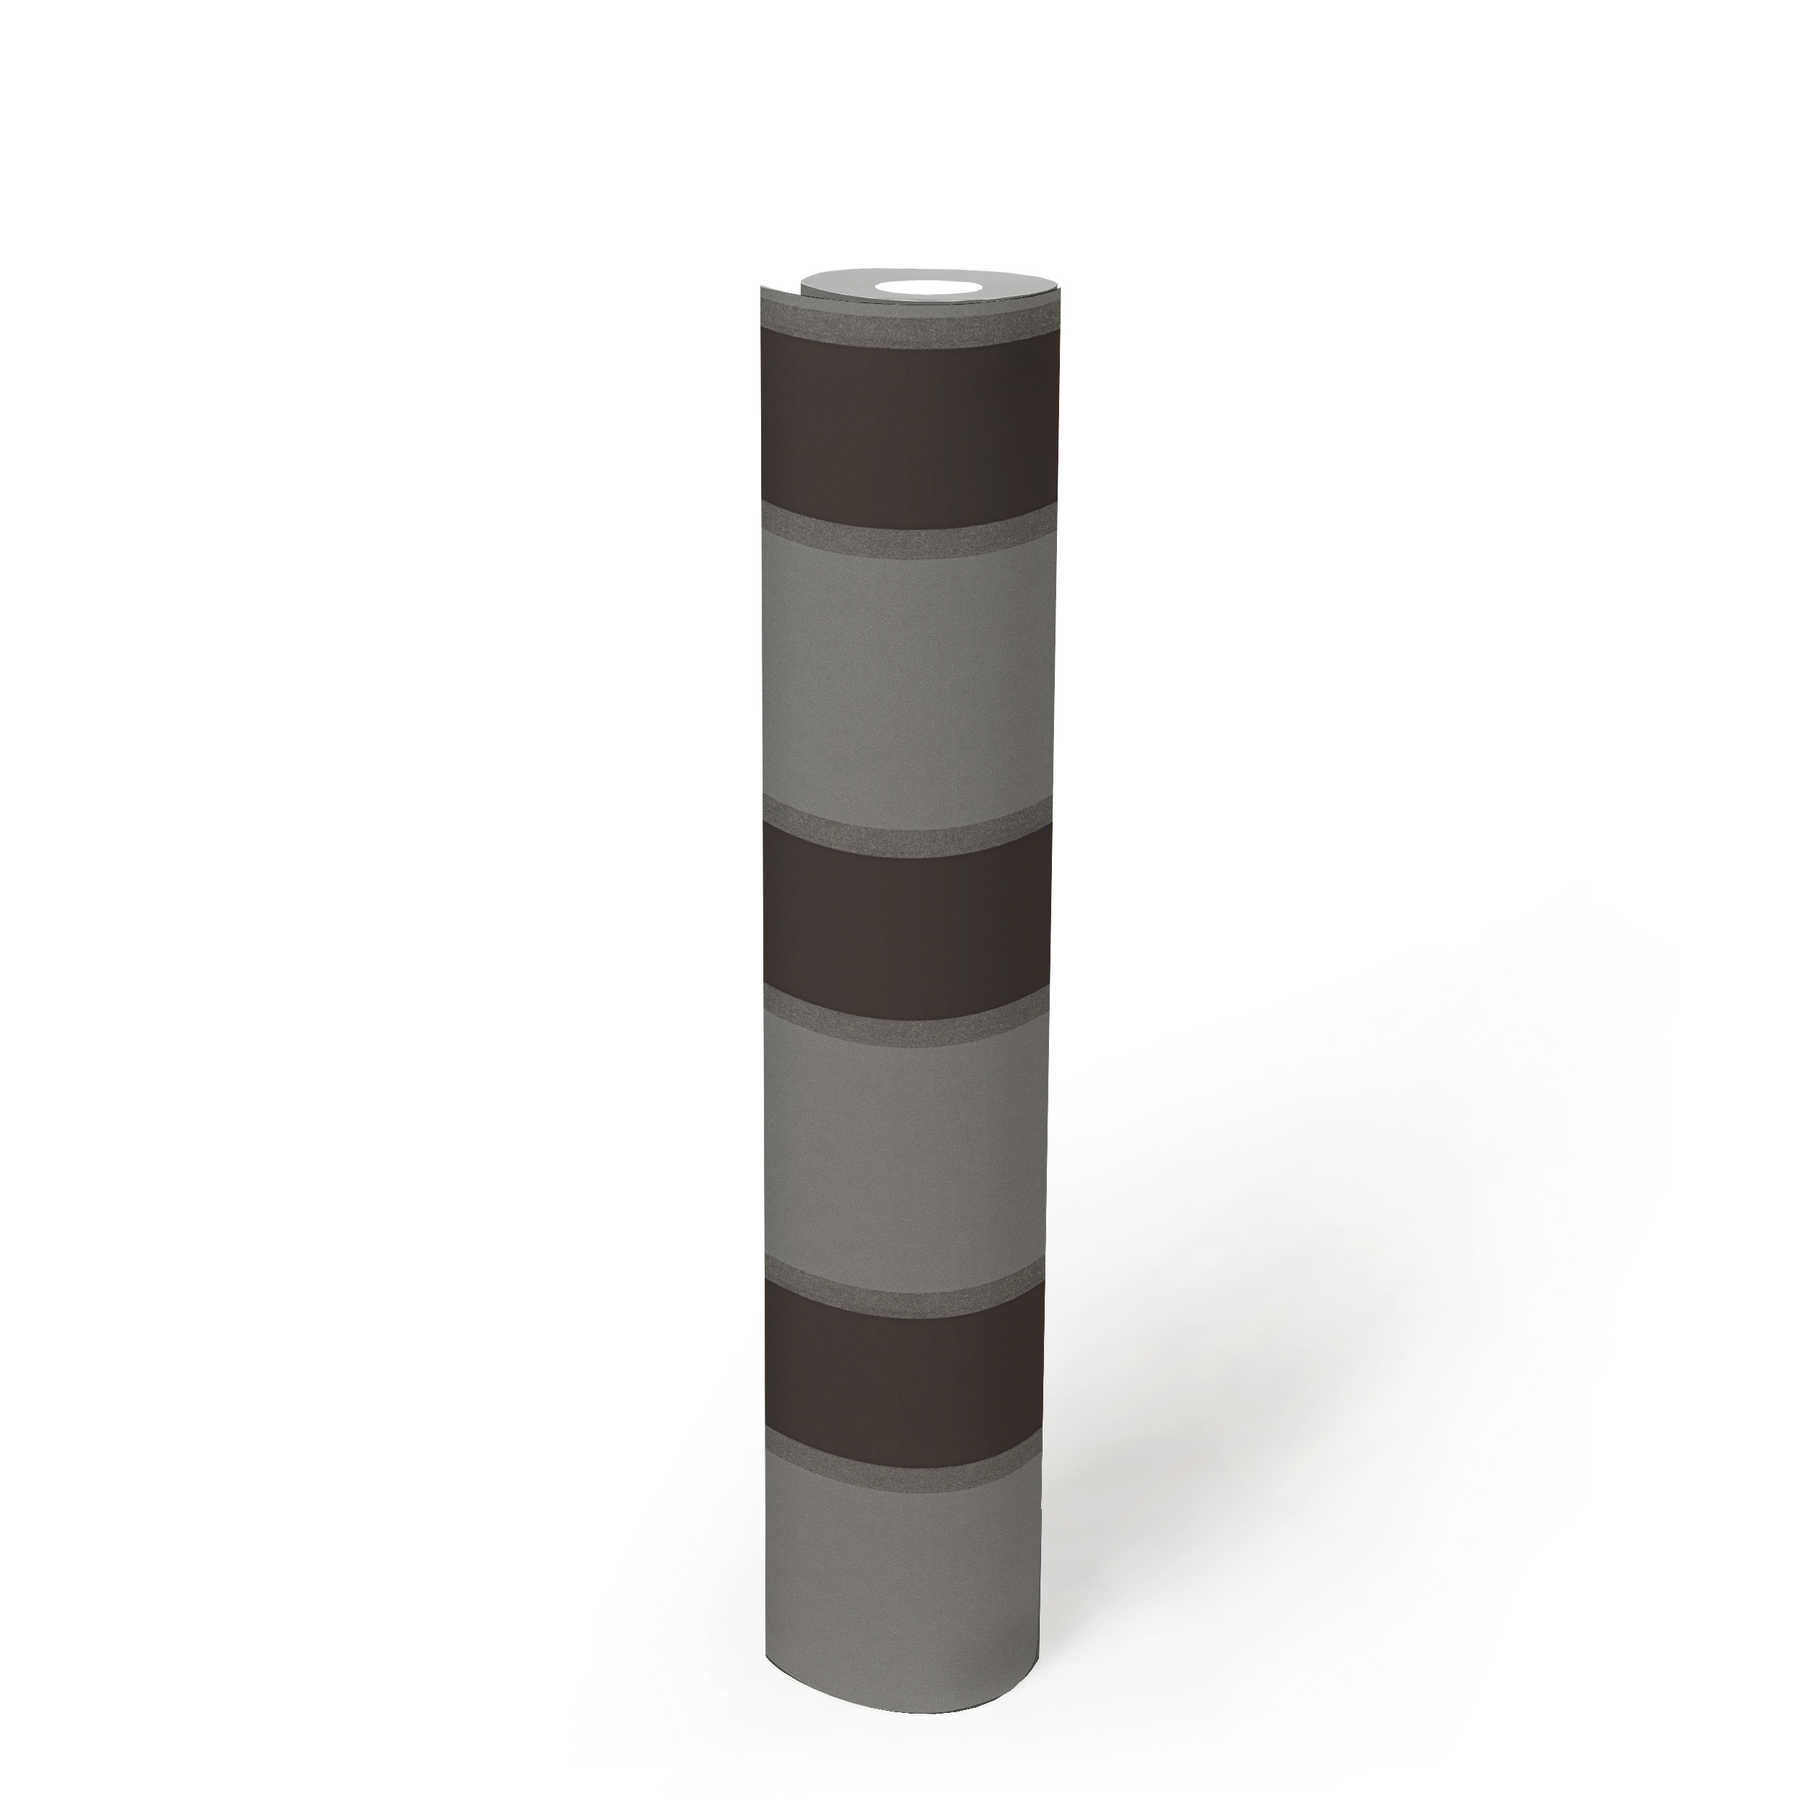             Metallic Tapete mit Streifen Muster – Grau, Schwarz
        